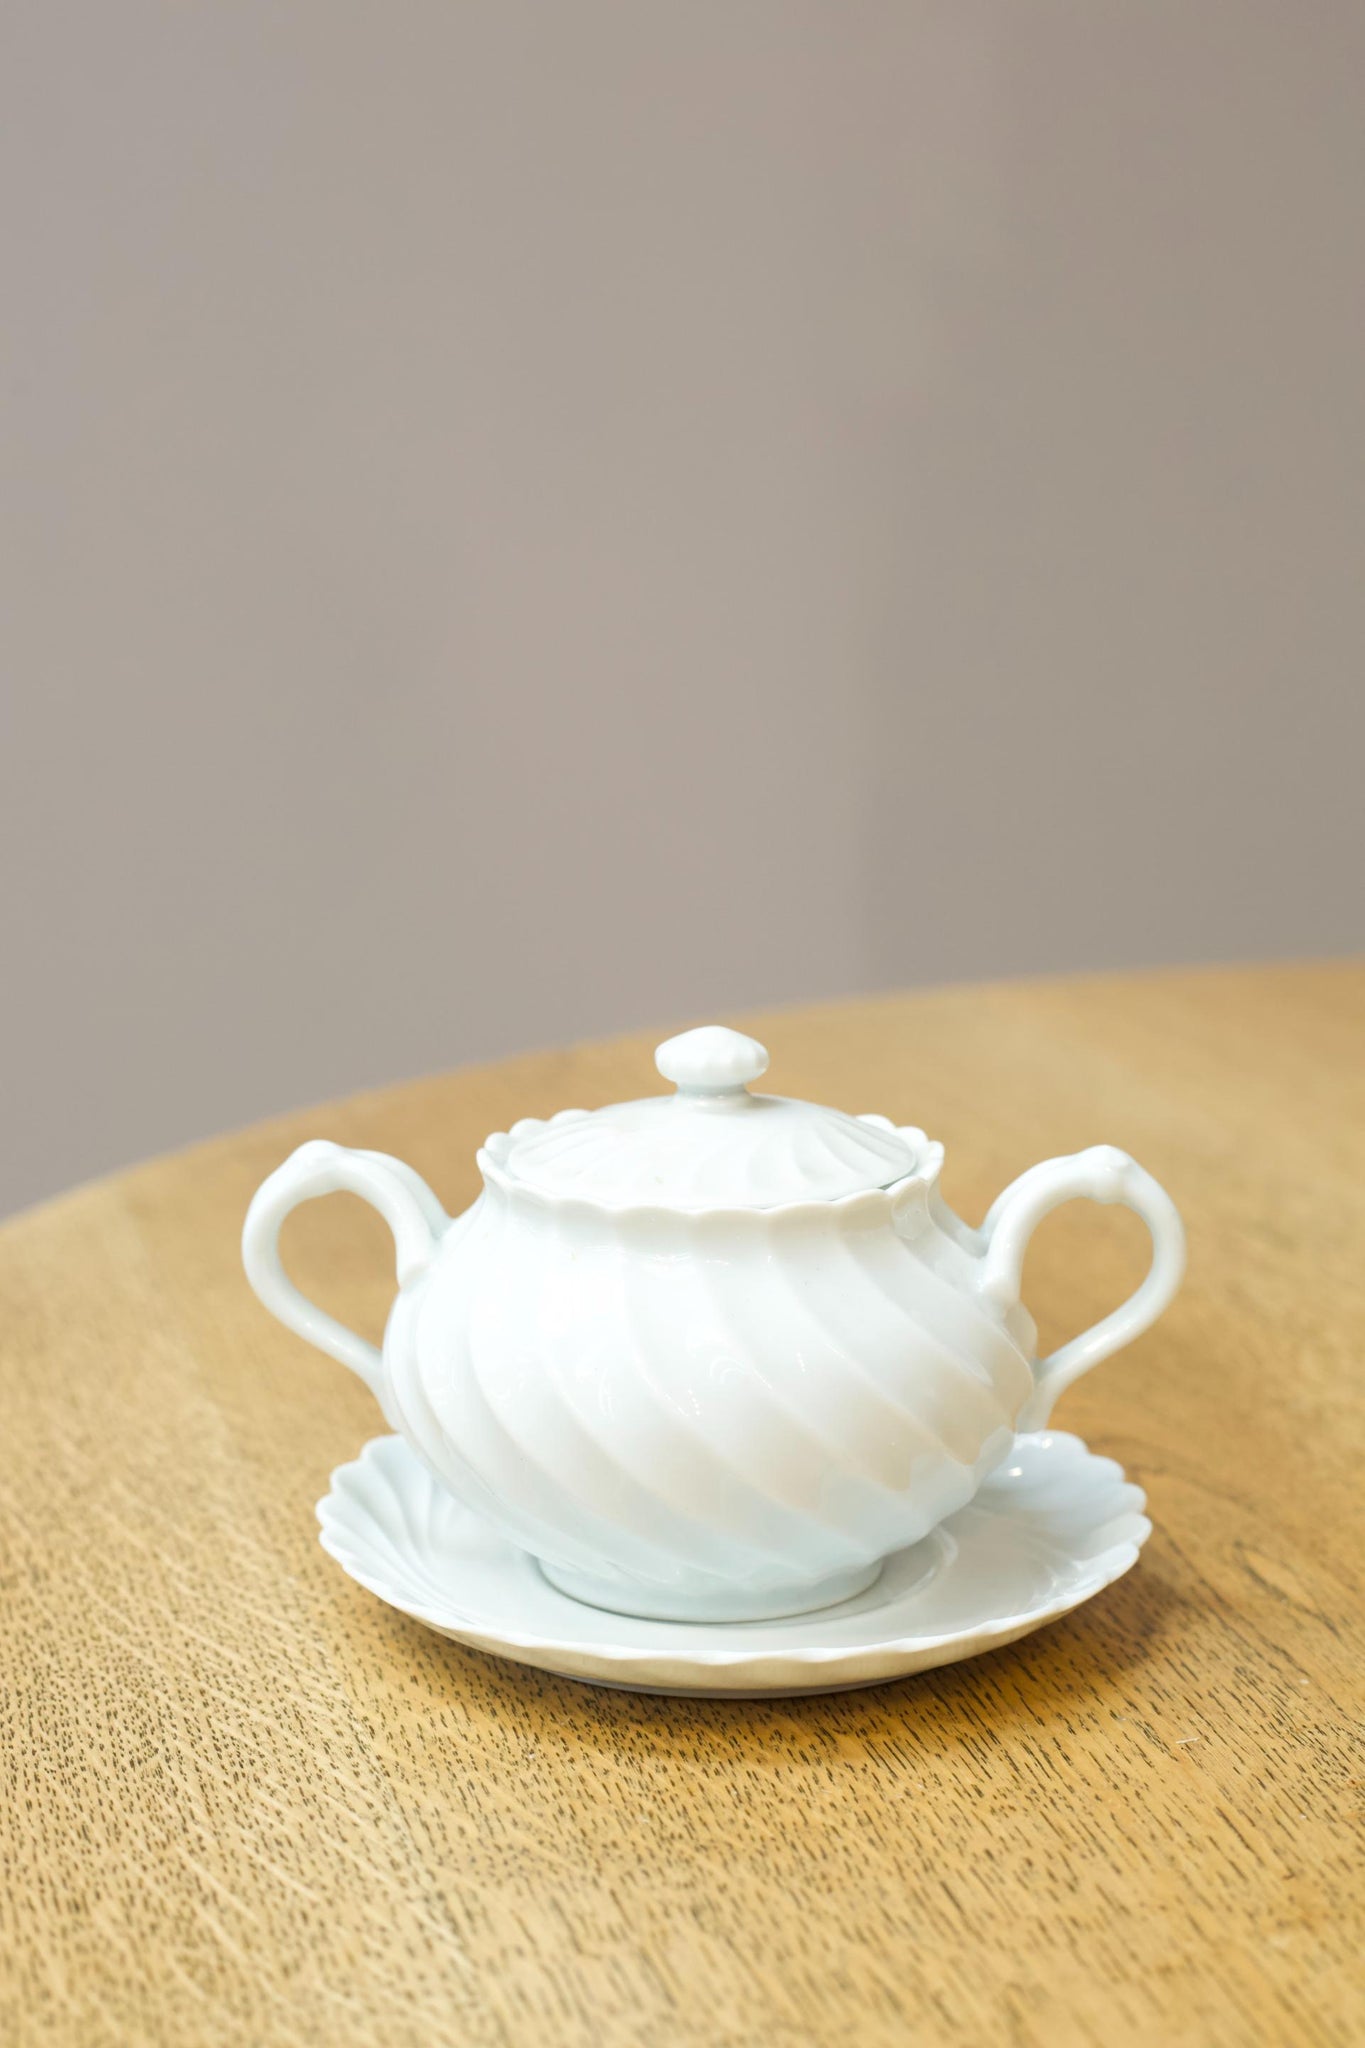 Vintage white porcelain sugar bowl and saucer